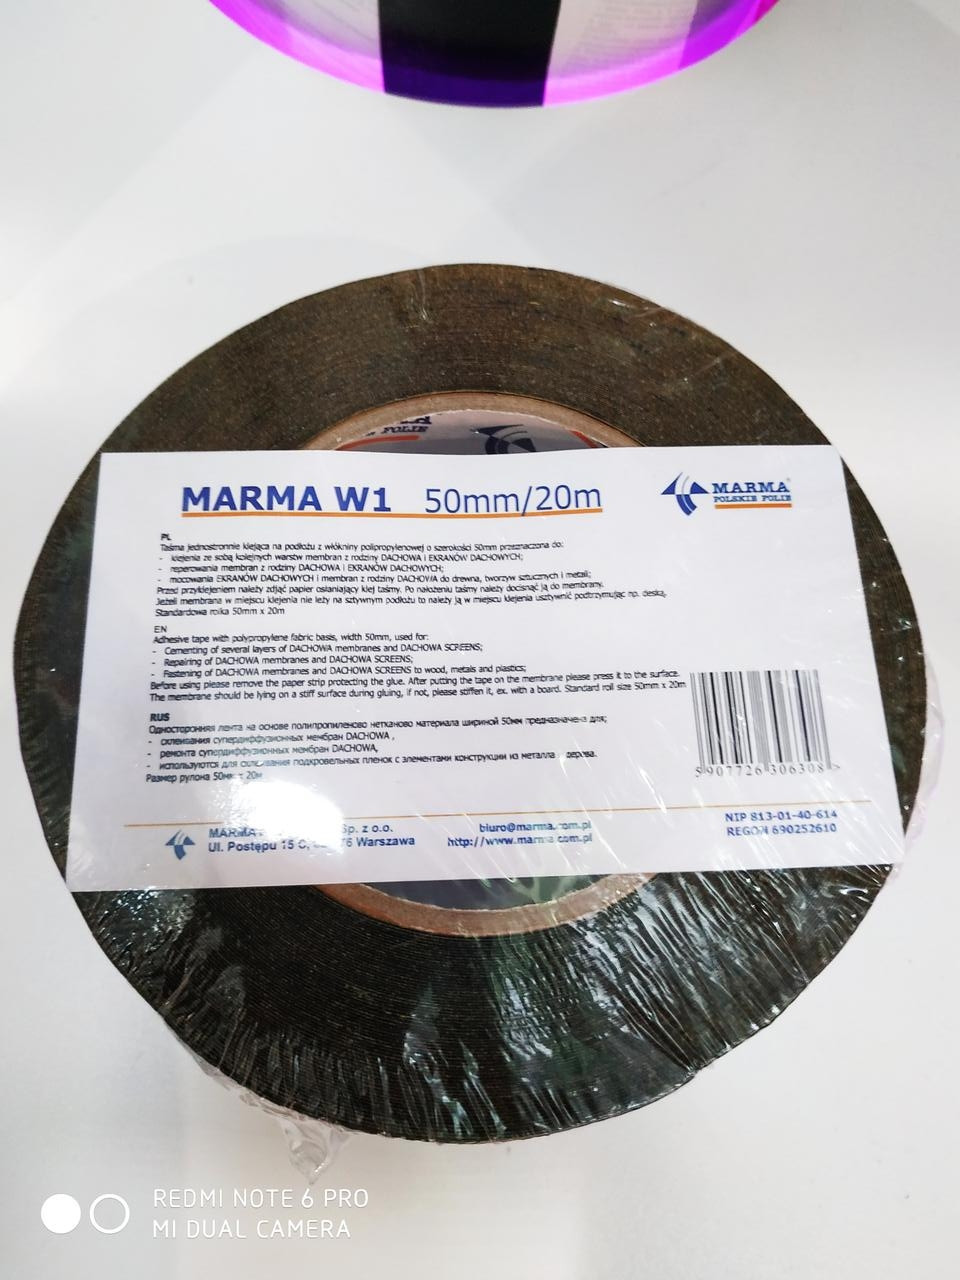 Односторонняя лента MARMA W1 50мм/20м.